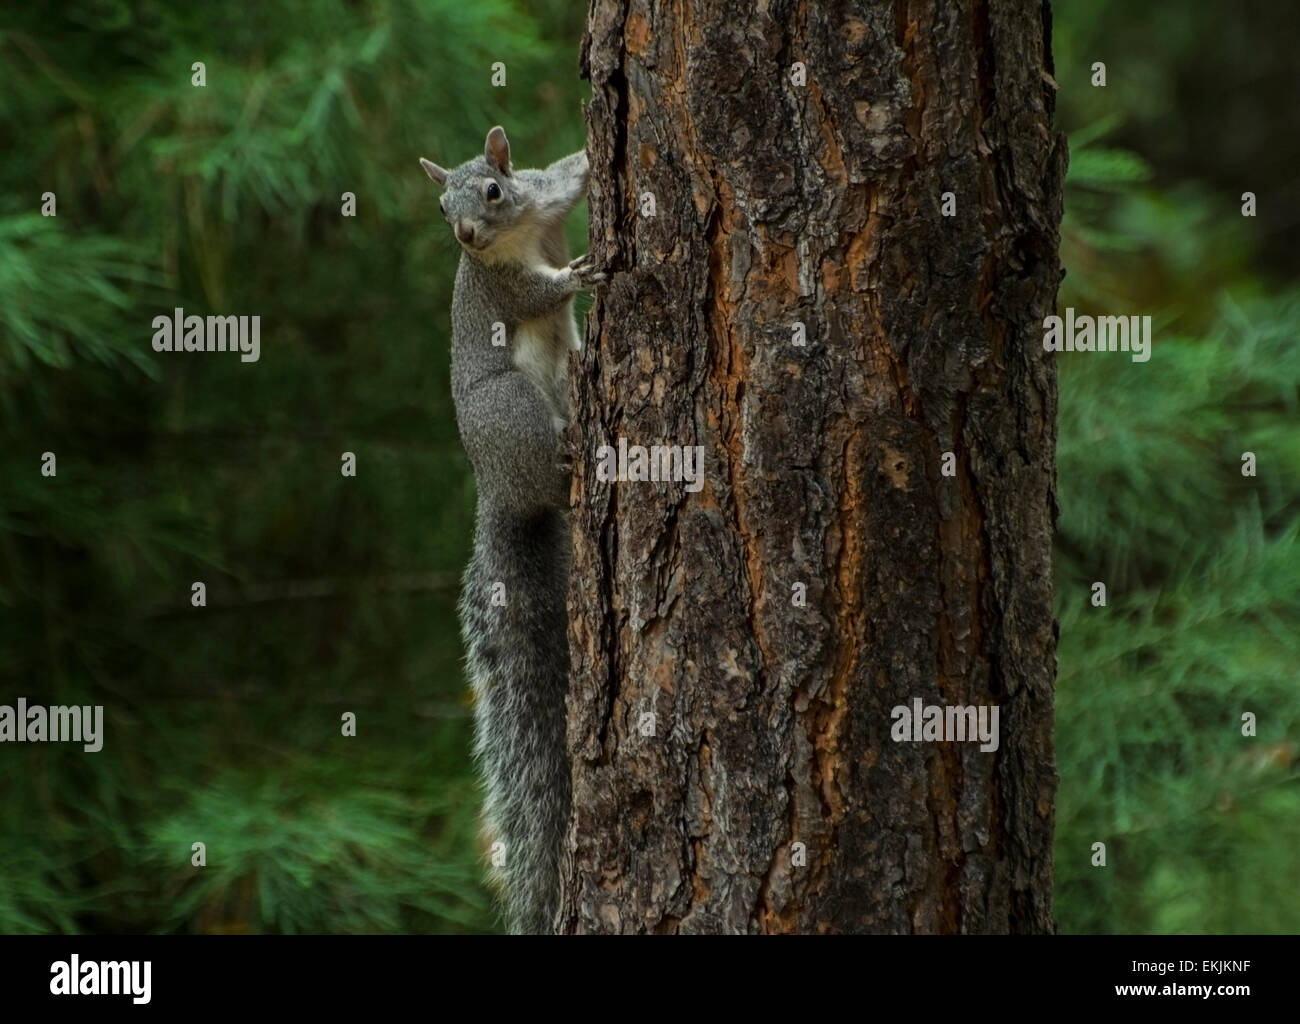 Westliche graue Eichhörnchen (Sciurus früh) ist eine arboreal Nagetier, der in den Wäldern von der Sierra Foothills in Kalifornien wohnt. Stockfoto